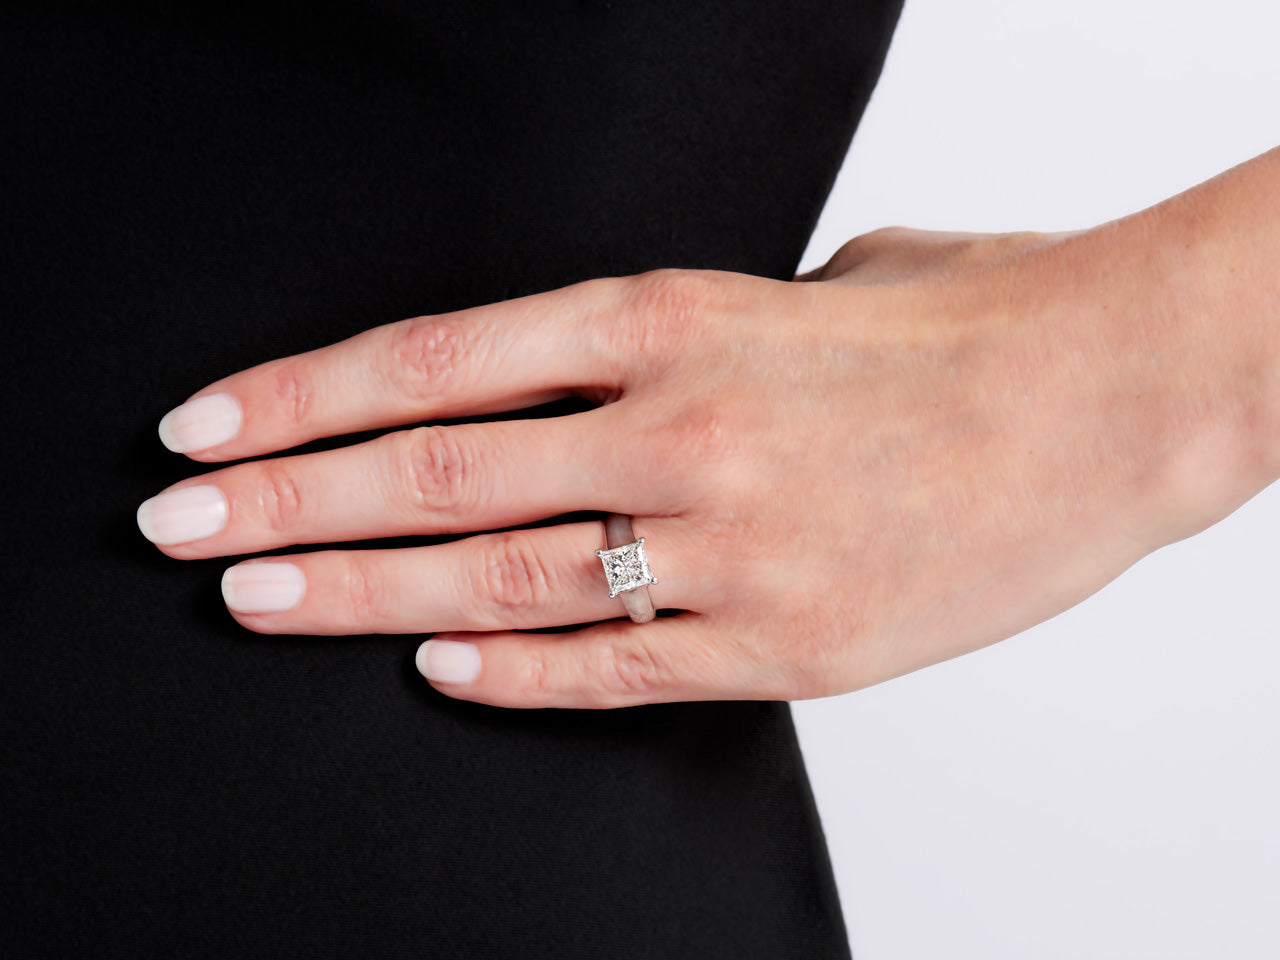 Princess-Cut Diamond, 2.08 Carat G/VS2, Solitaire Ring in Platinum